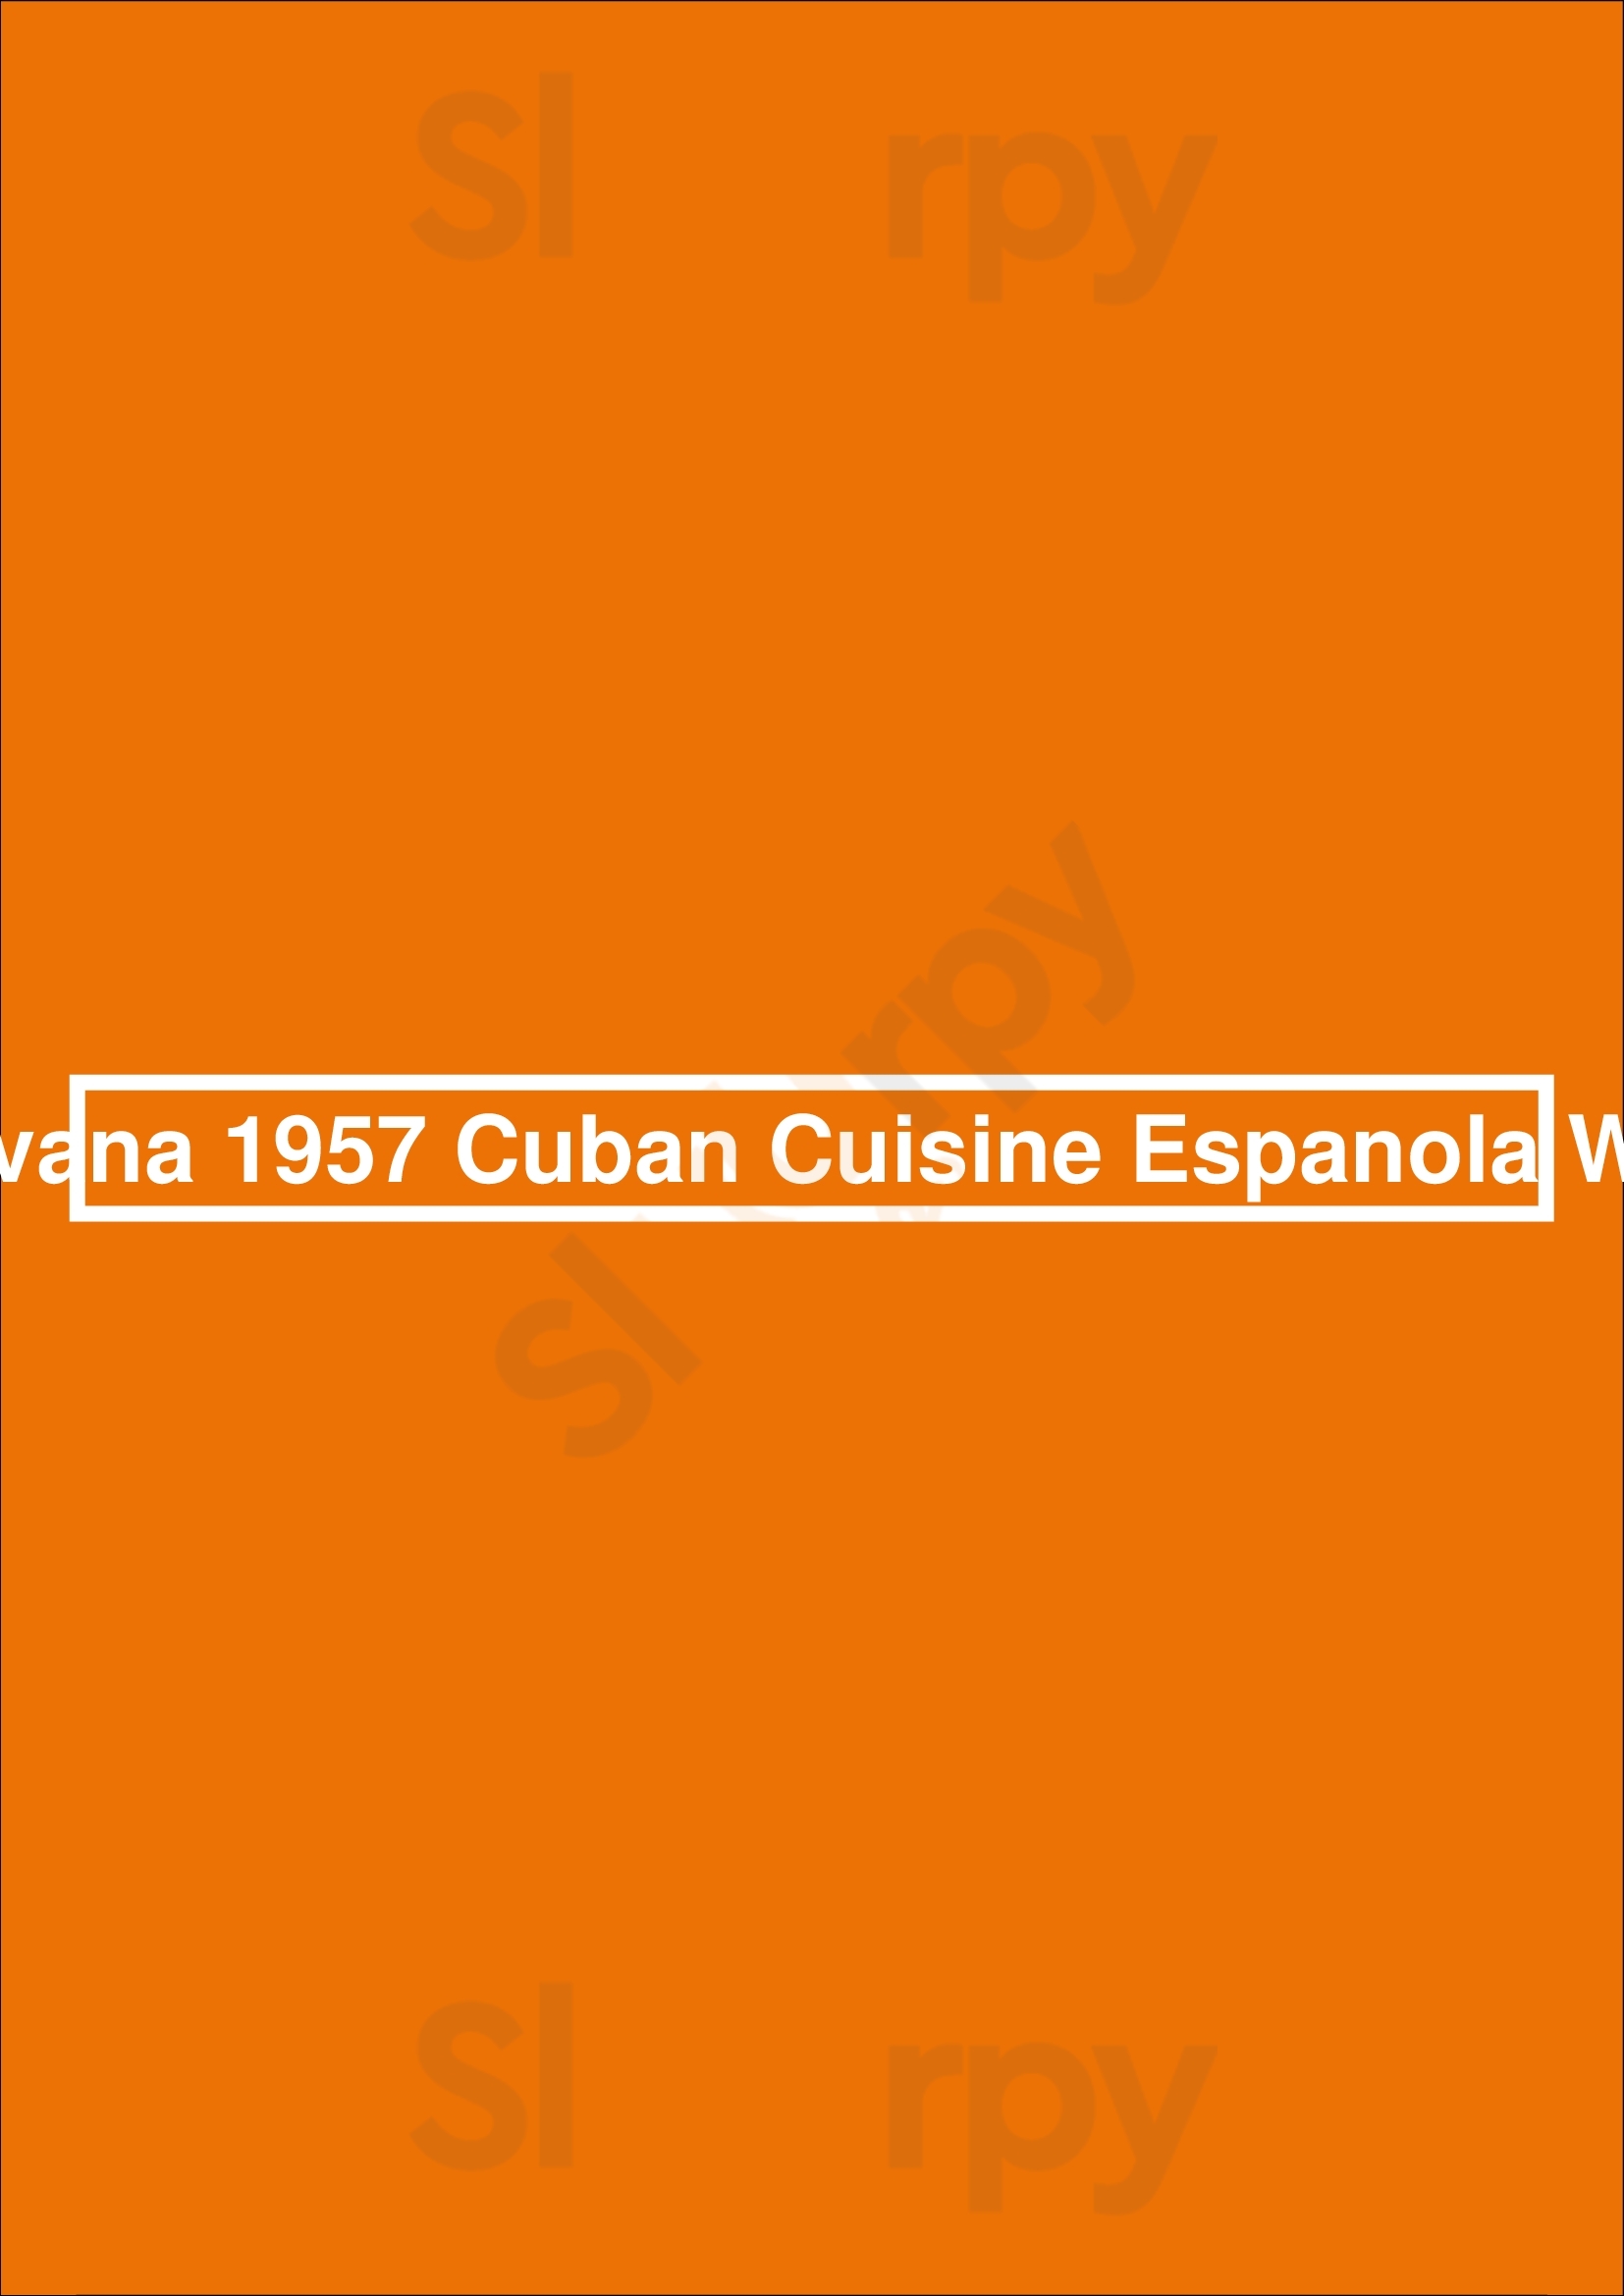 Havana 1957 Cuban Cuisine Espanola Way Miami Beach Menu - 1